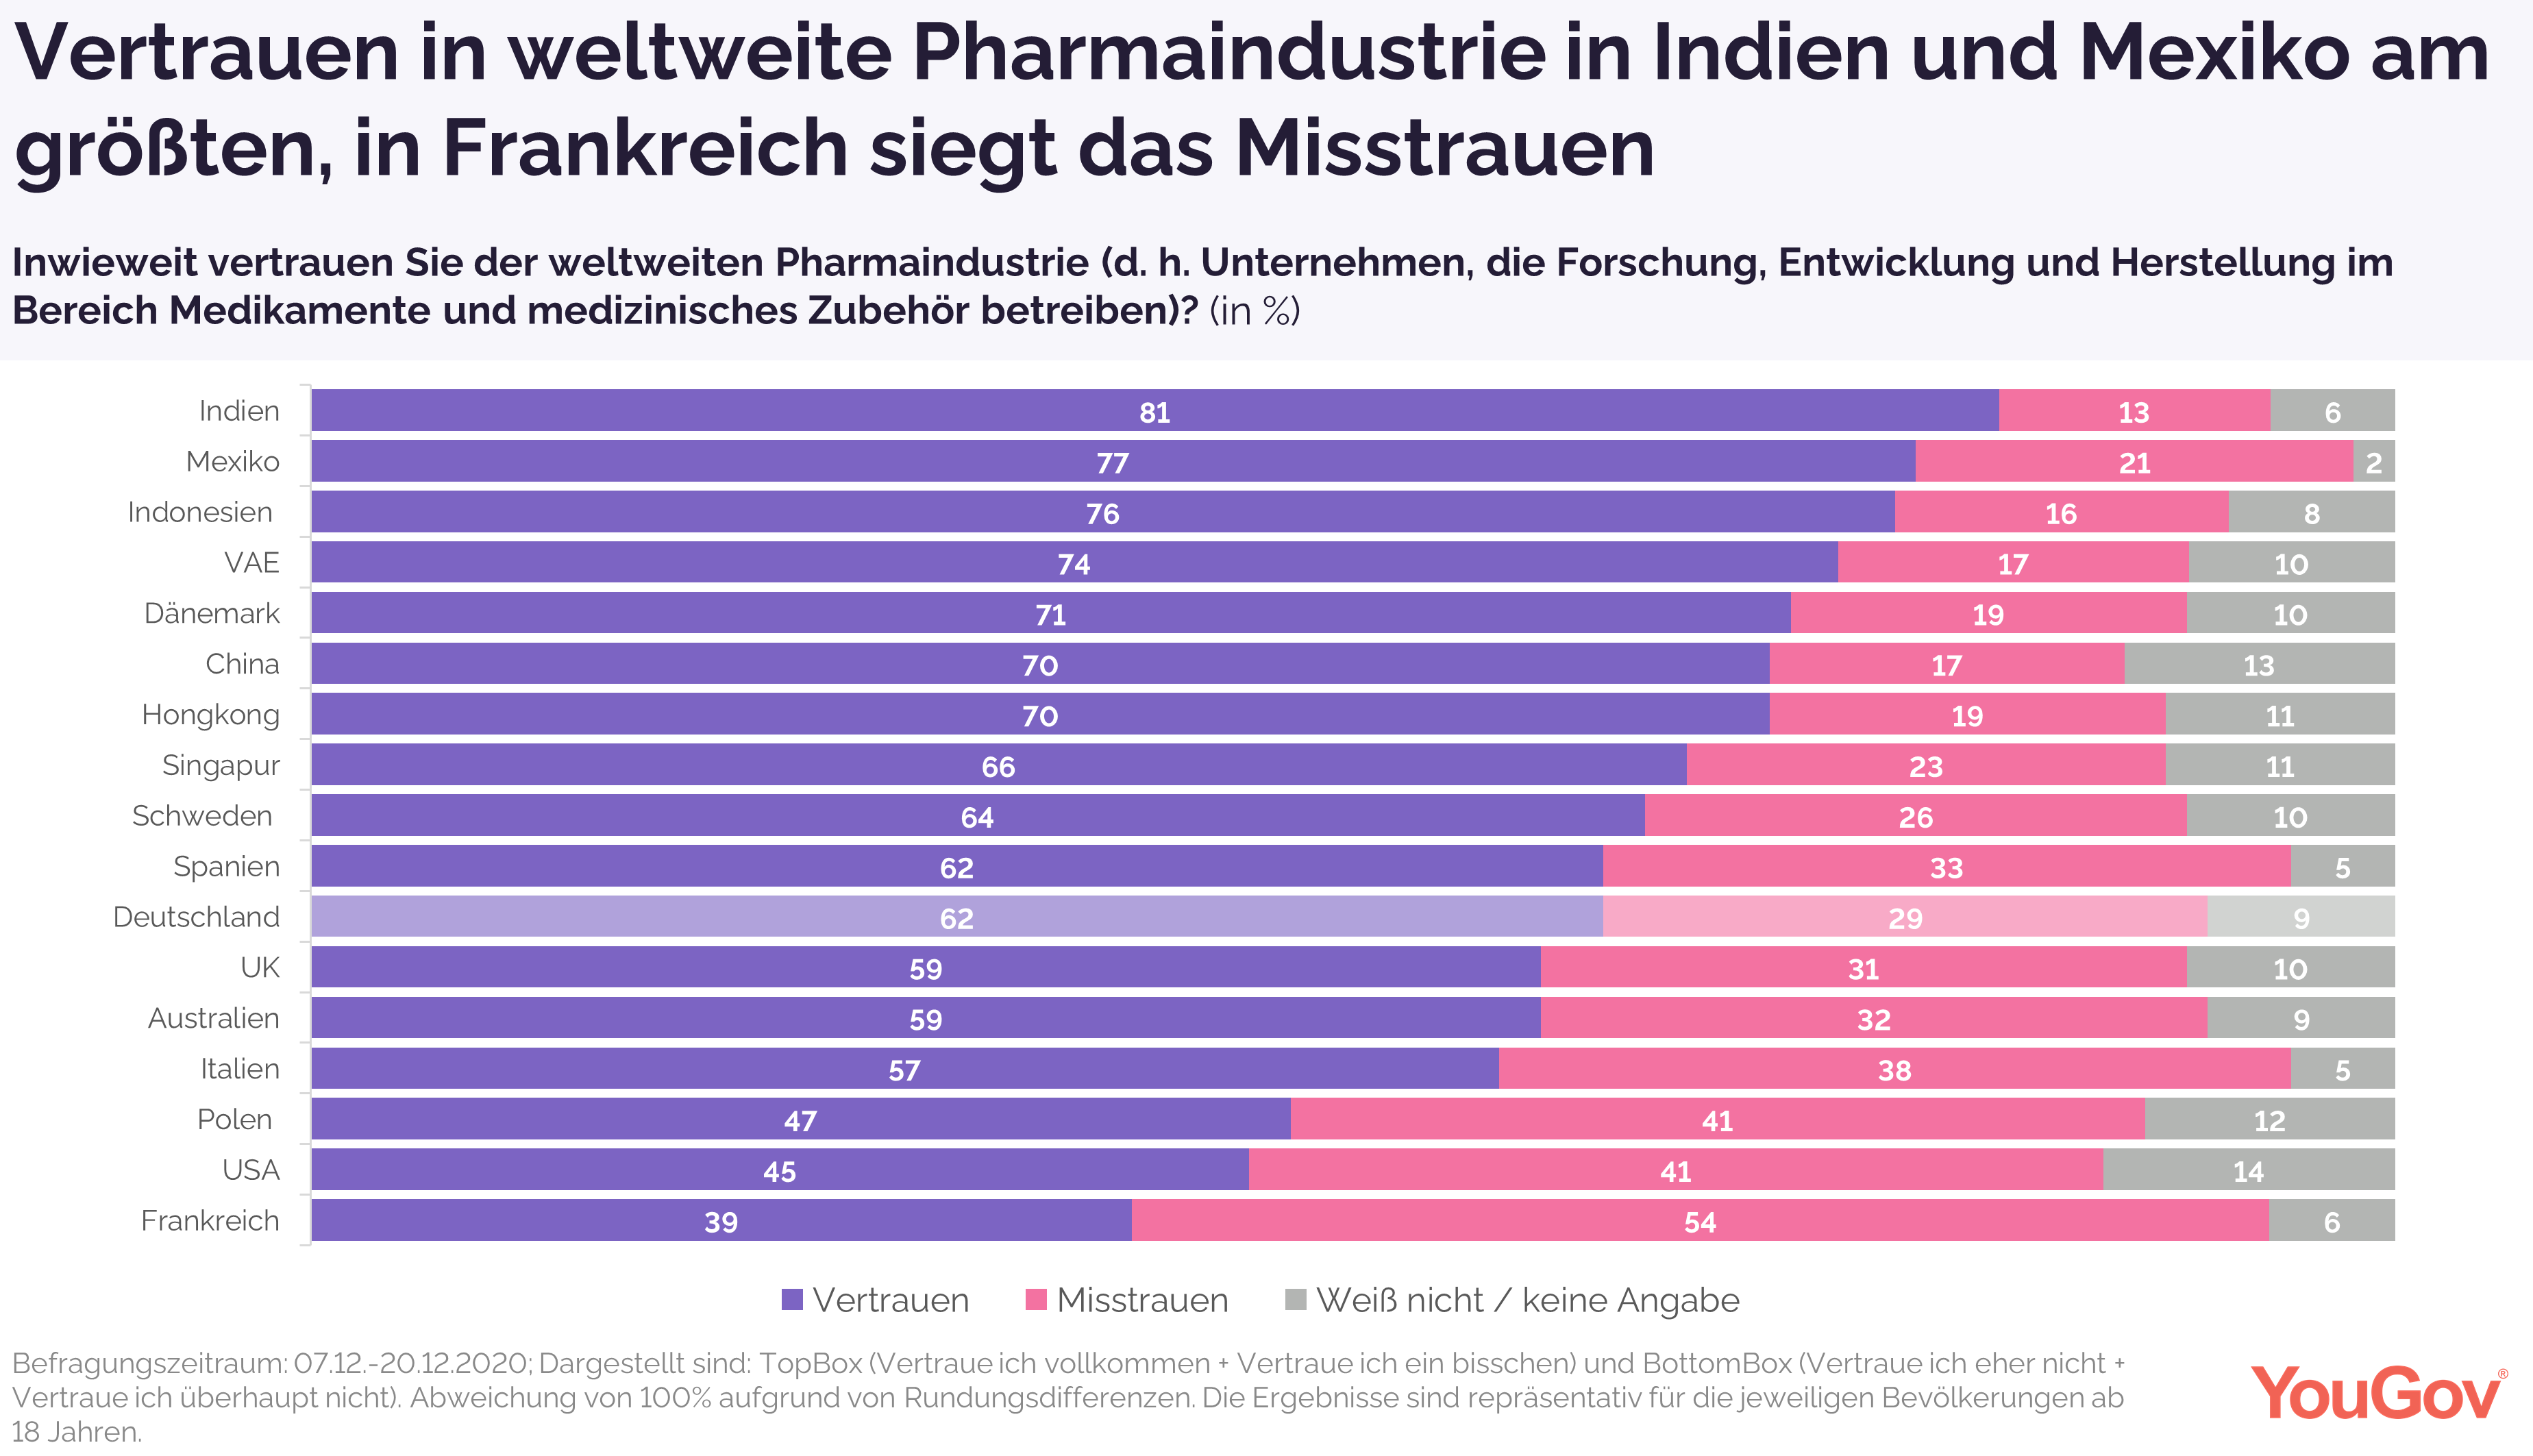 Vertrauen in Pharmaindustrie in Indien und Mexiko am höchsten